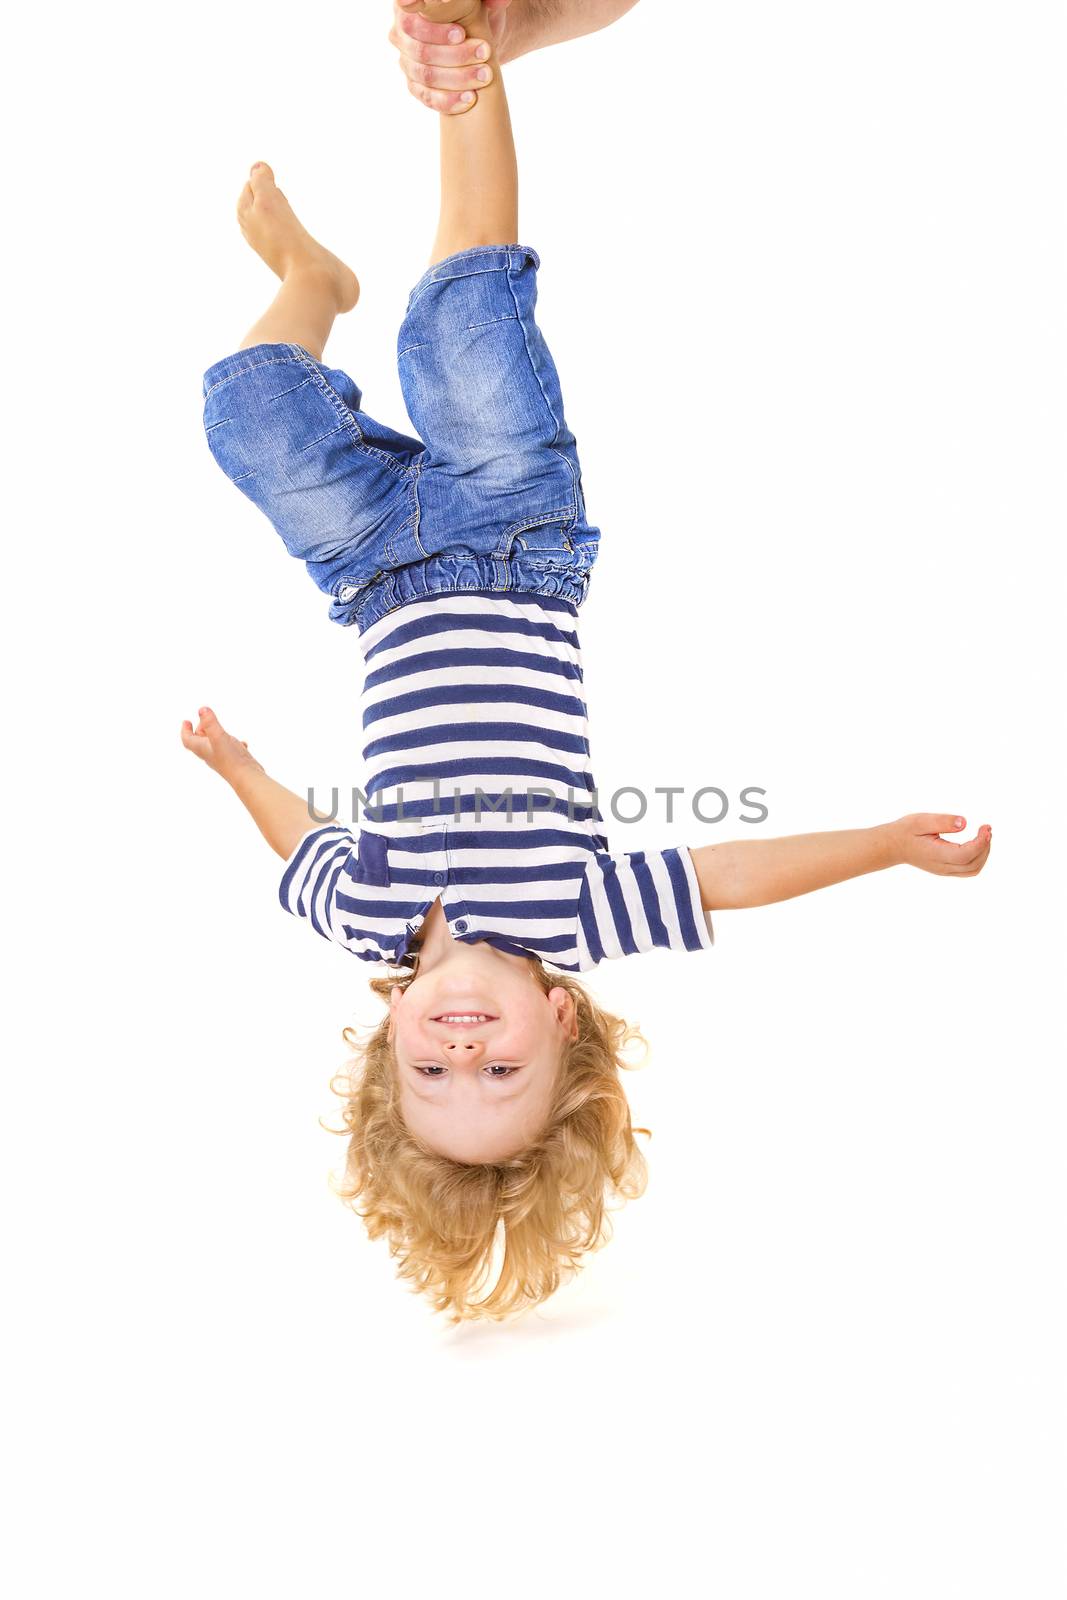 Little boy upside down by manaemedia